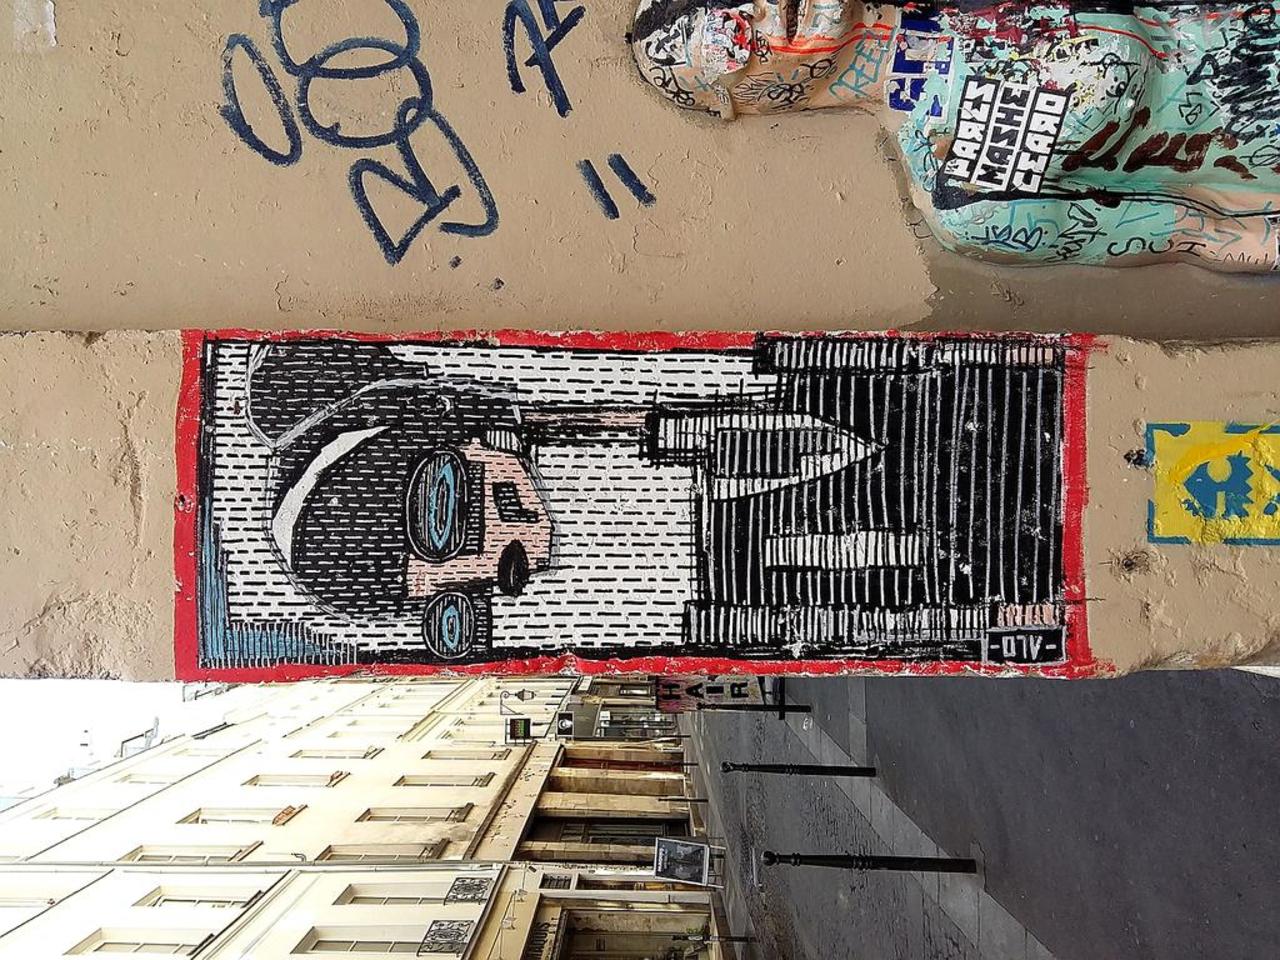 Street Art by alo_art in #Paris http://www.urbacolors.com #art #mural #graffiti #streetart http://t.co/98DjH1dG0w